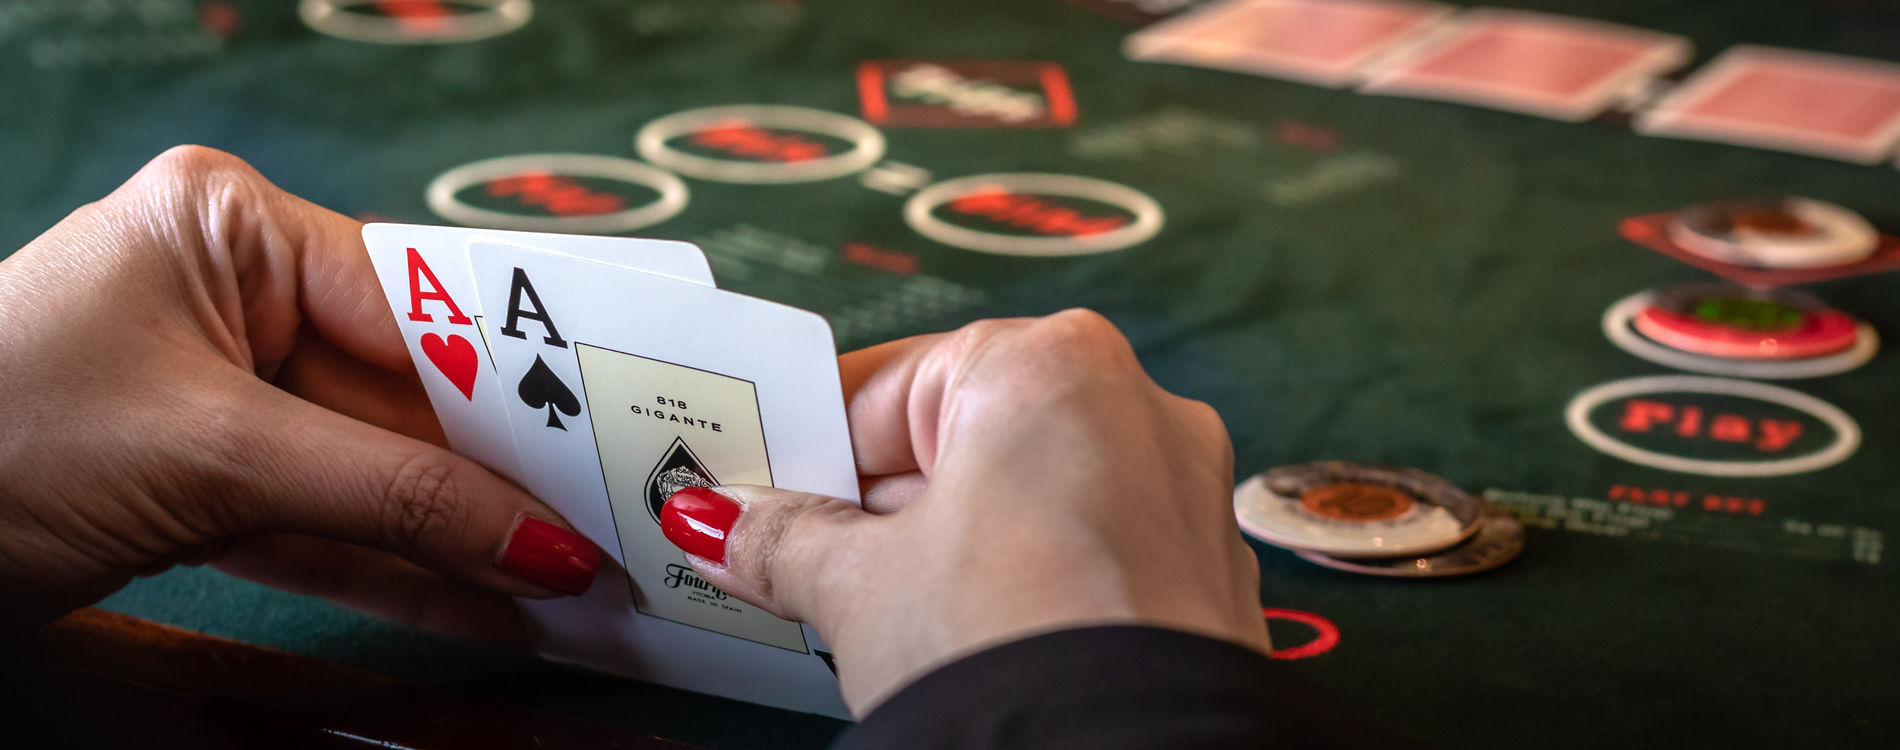 چگونه یک بازی پوکر بازی کنیم: رتبه بندی دست ها در بازی